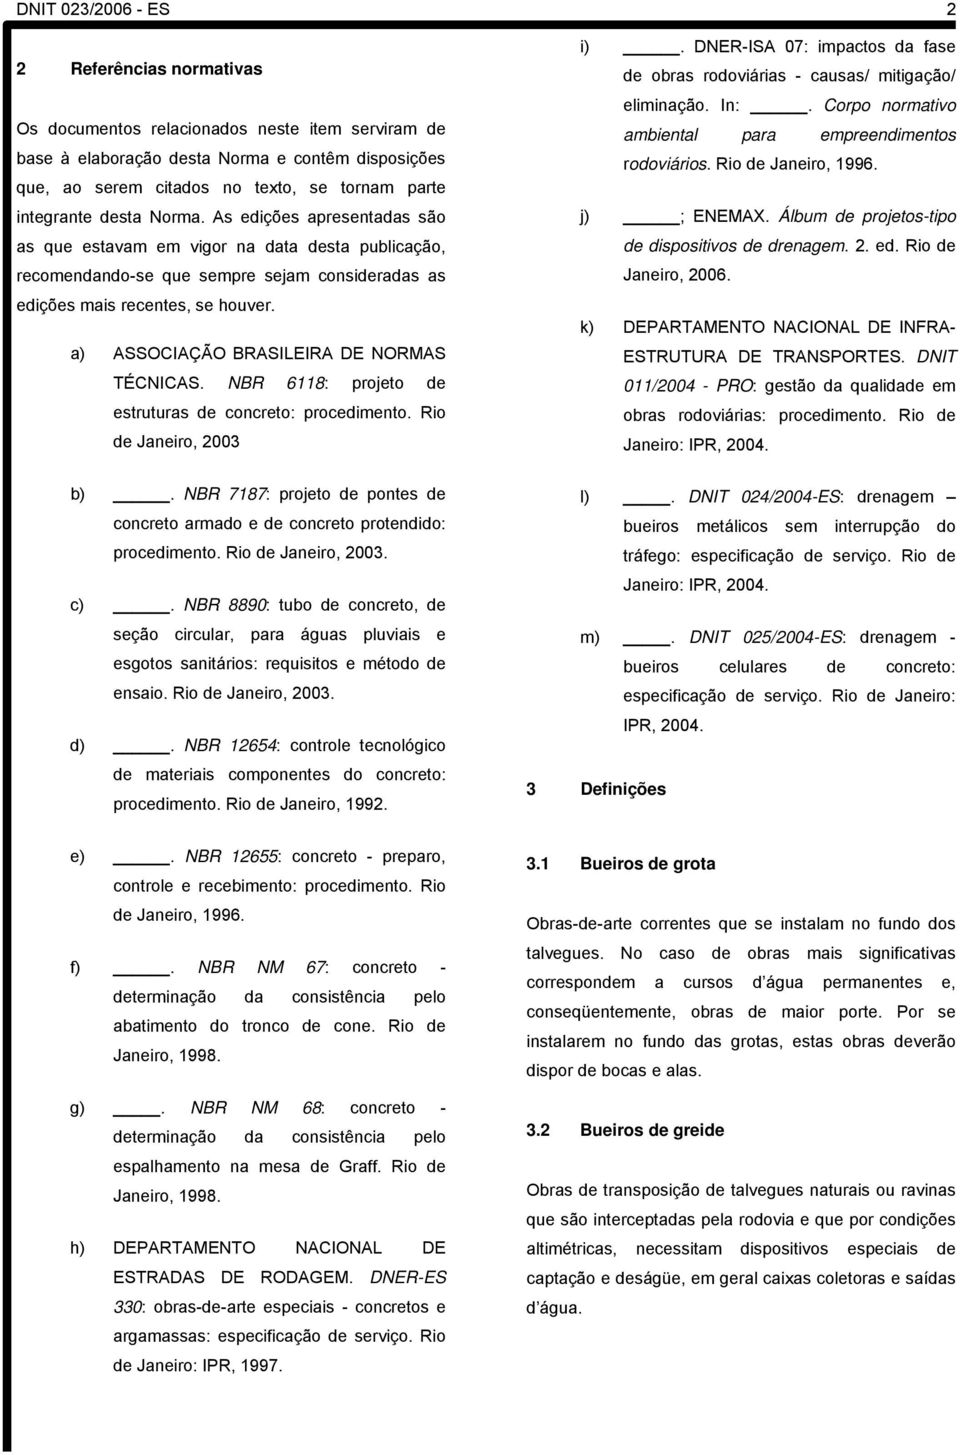 a) ASSOCIAÇÃO BRASILEIRA DE NORMAS TÉCNICAS. NBR 6118: projeto de estruturas de concreto: procedimento. Rio de Janeiro, 2003 i).